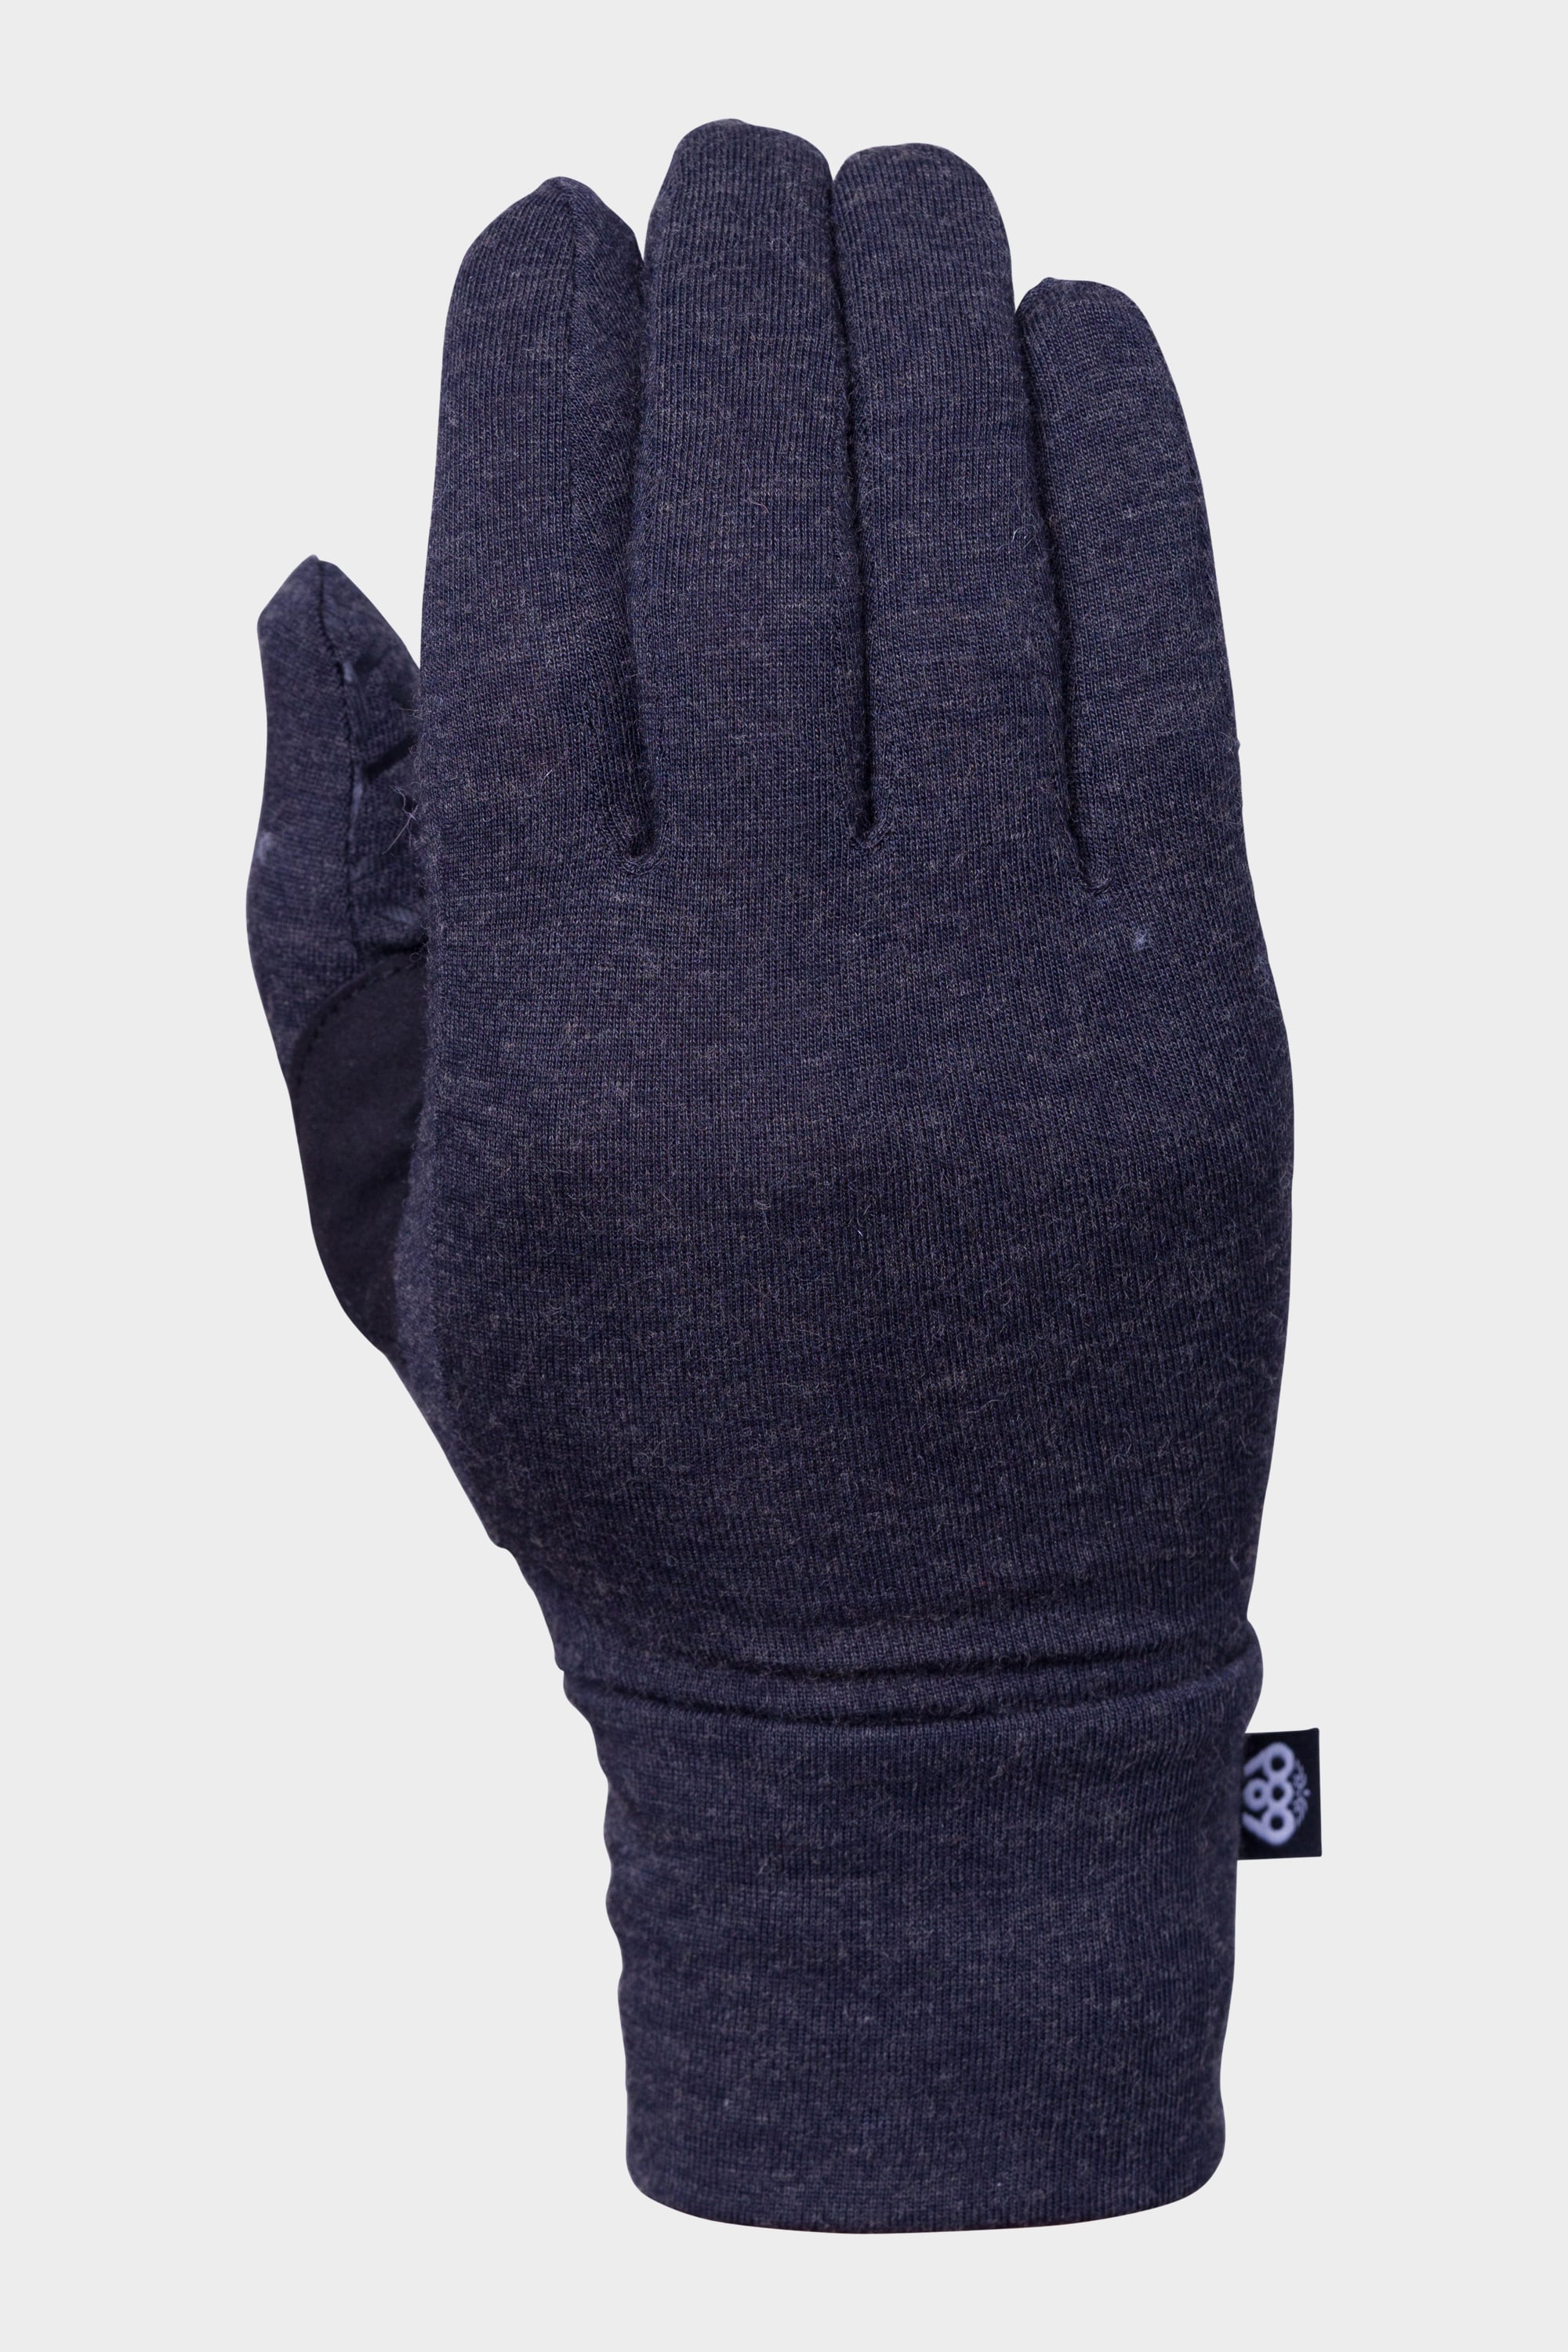 686 Fortune Glove - Women's